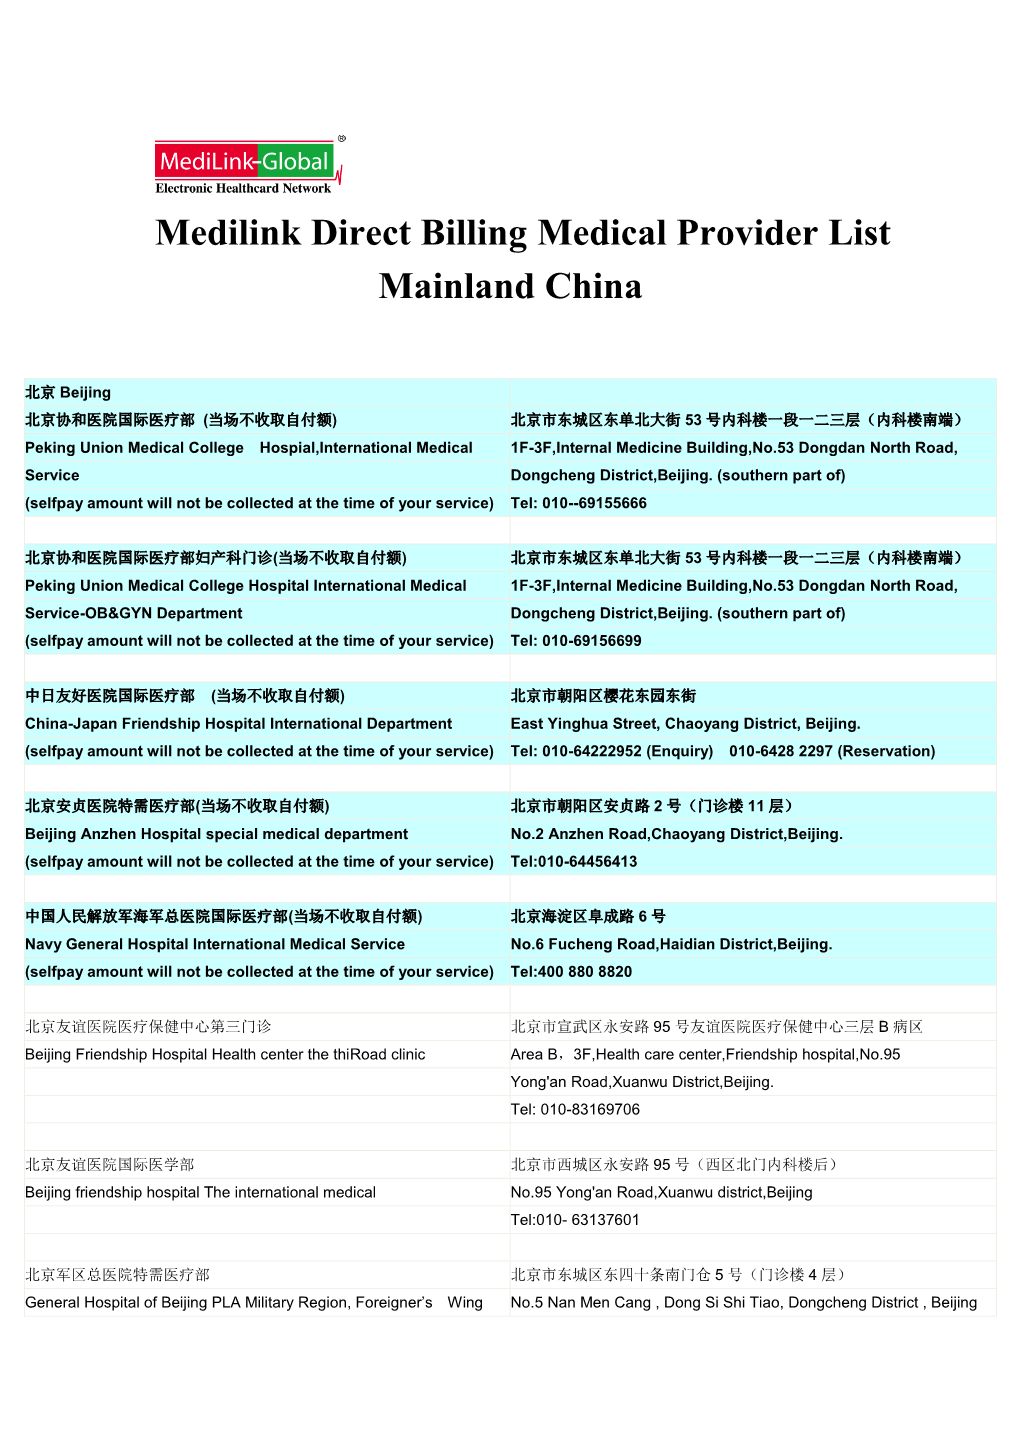 Medilink Direct Billing Medical Provider List Mainland China